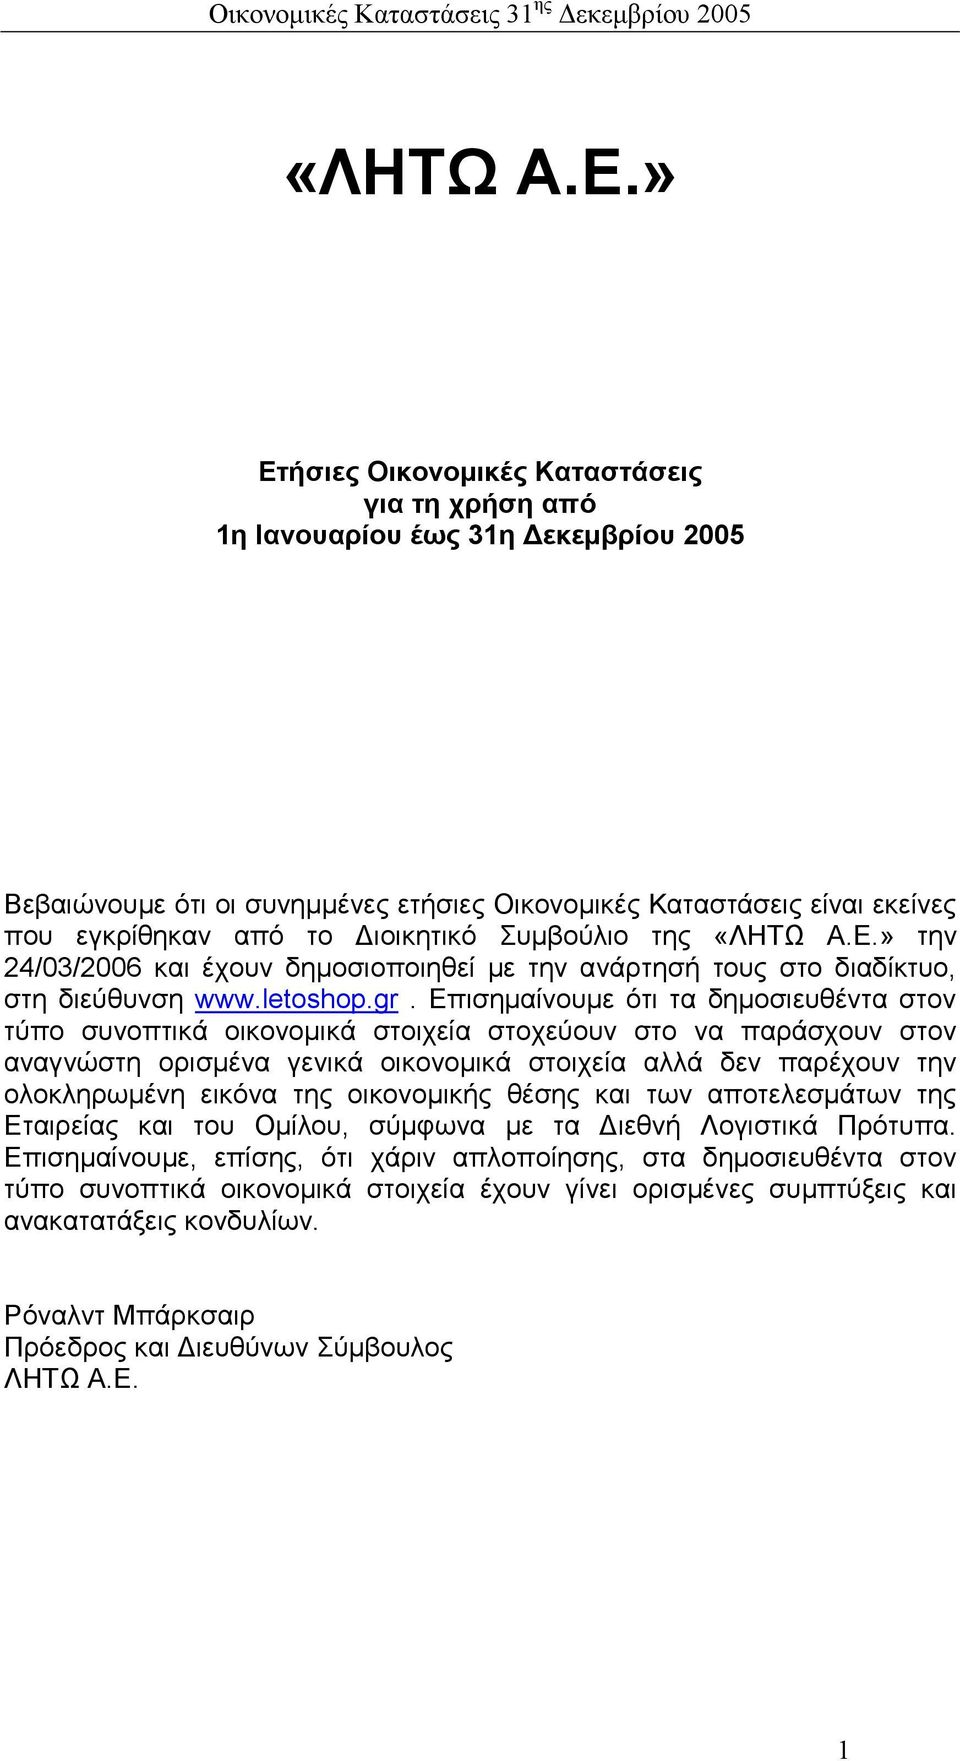 Συµβούλιο της » την 24/03/2006 και έχουν δηµοσιοποιηθεί µε την ανάρτησή τους στο διαδίκτυο, στη διεύθυνση www.letoshop.gr.